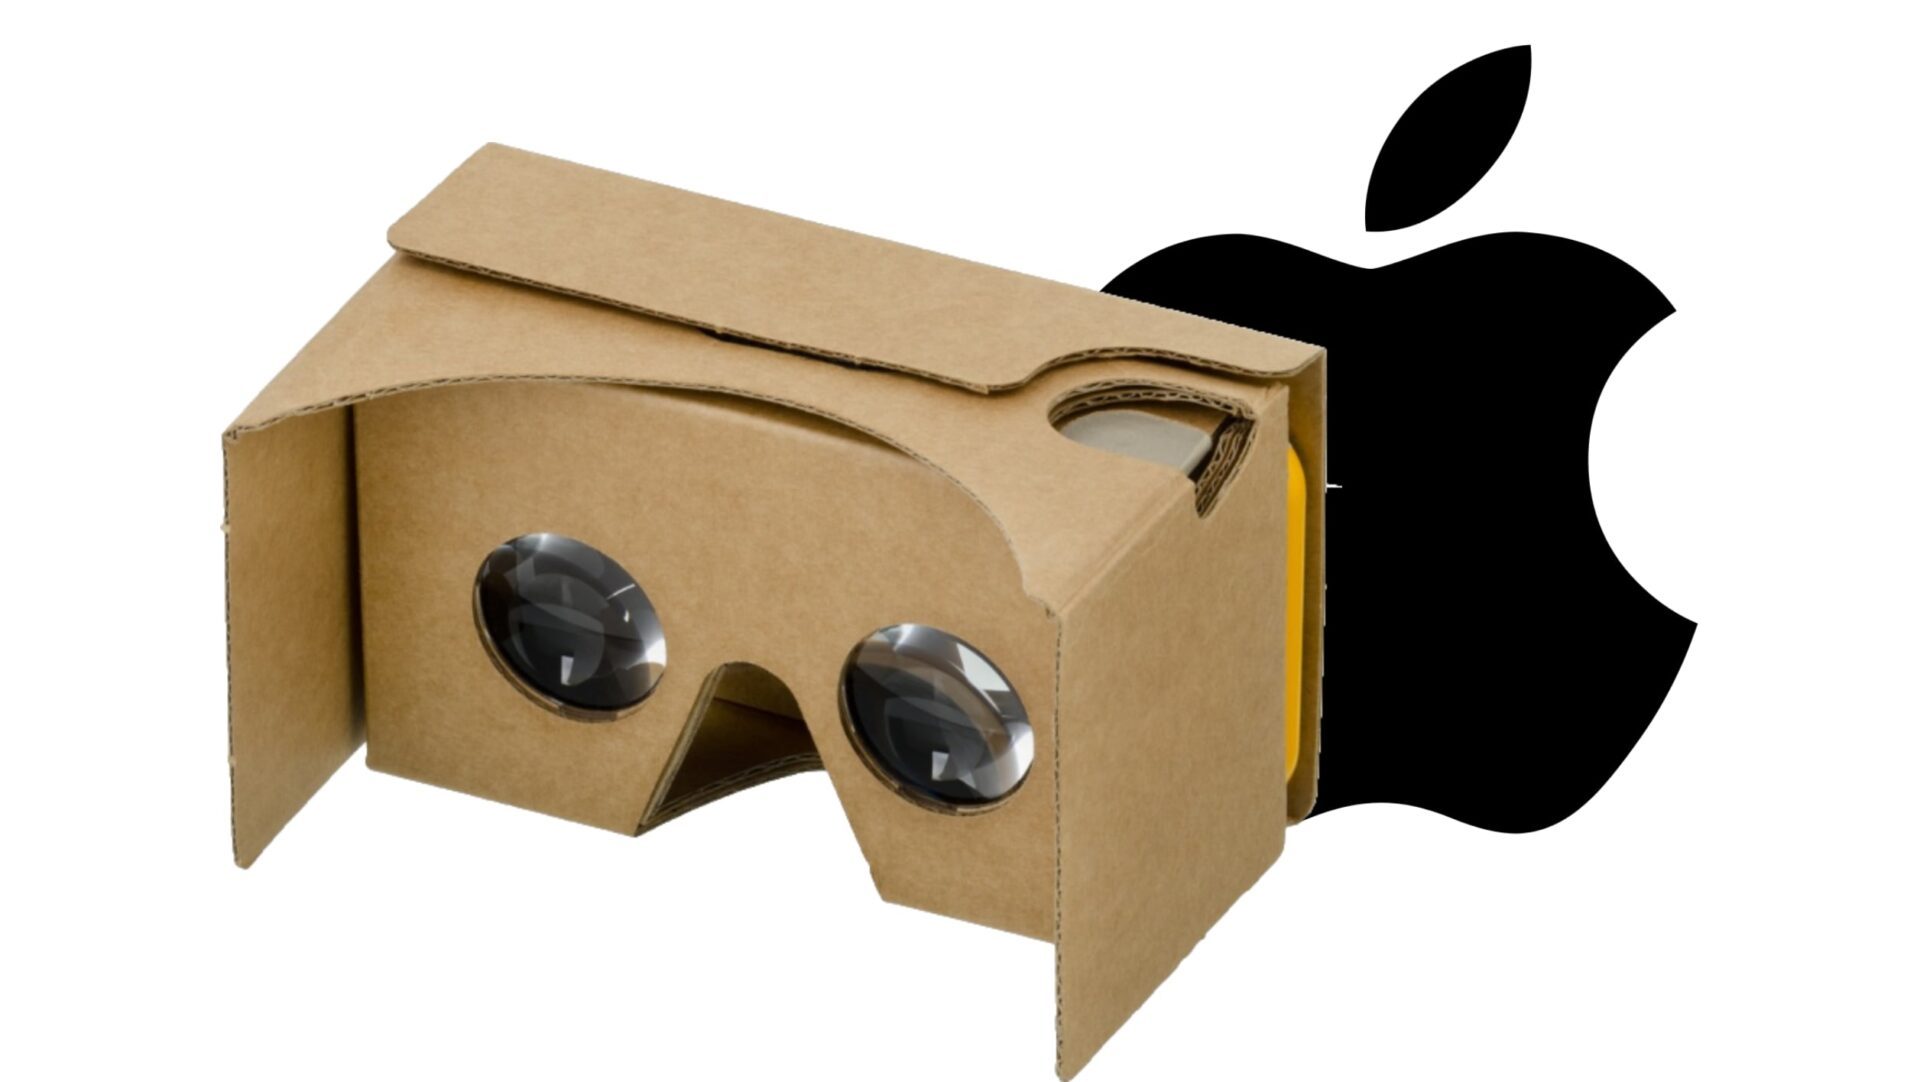 Casques de réalité virtuelle : en attendant Apple, Meta écrase complètement  la concurrence